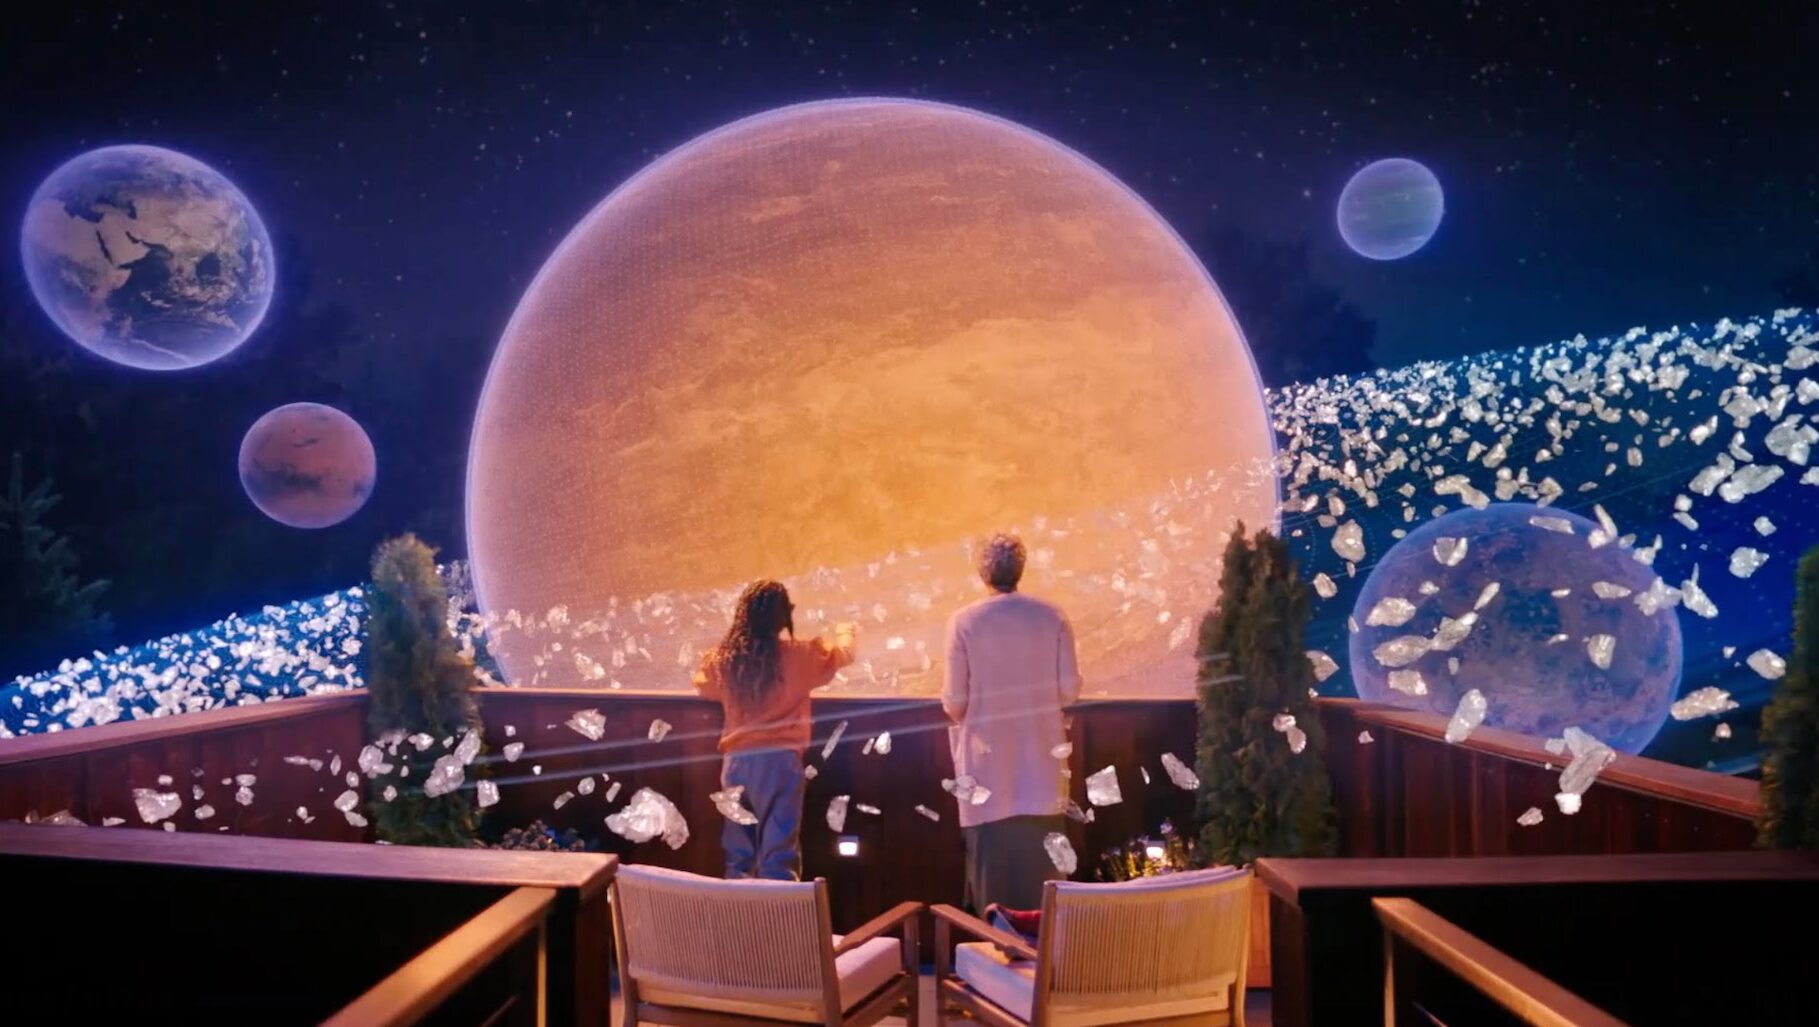 Ein Kind und eine Frau schauen auf einem realen Balkon ein digitales Weltall an.